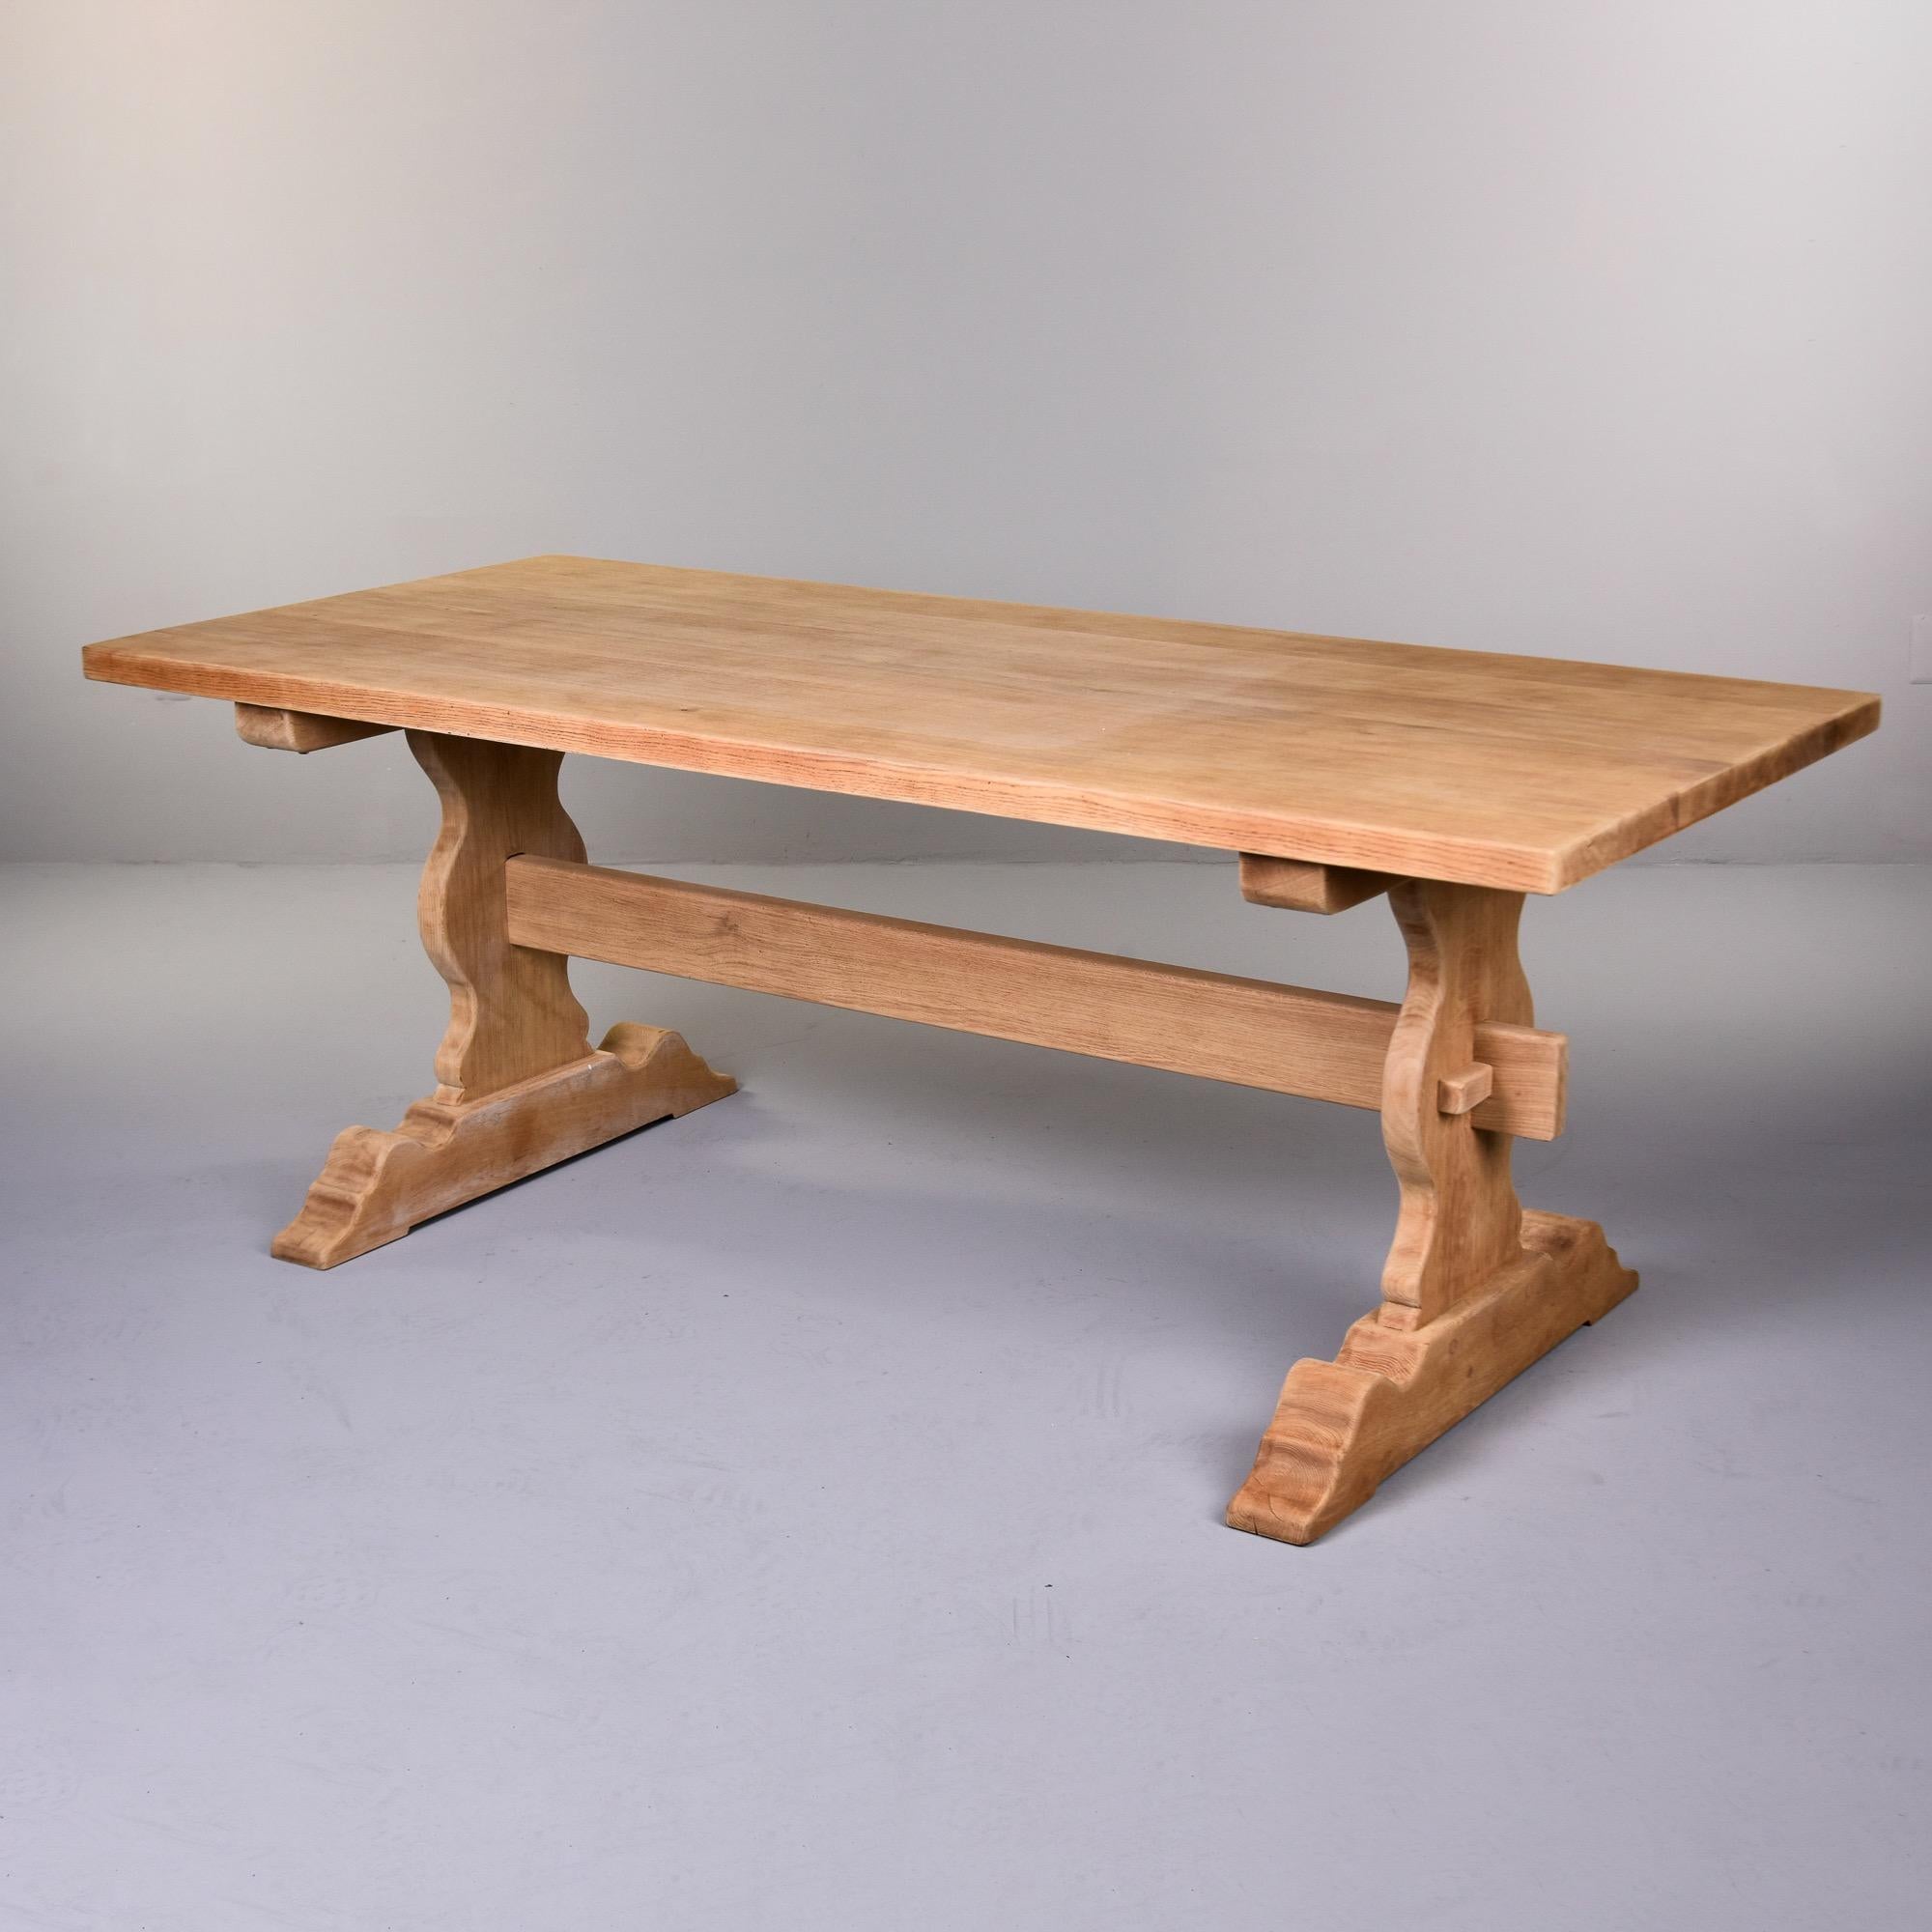 Trouvée en France, cette table à tréteaux de ferme en chêne français vers 1900 présente une finition nue et a été poncée.  La table classique de style tréteau est structurellement solide grâce à la construction à tenons et mortaises. Quelques